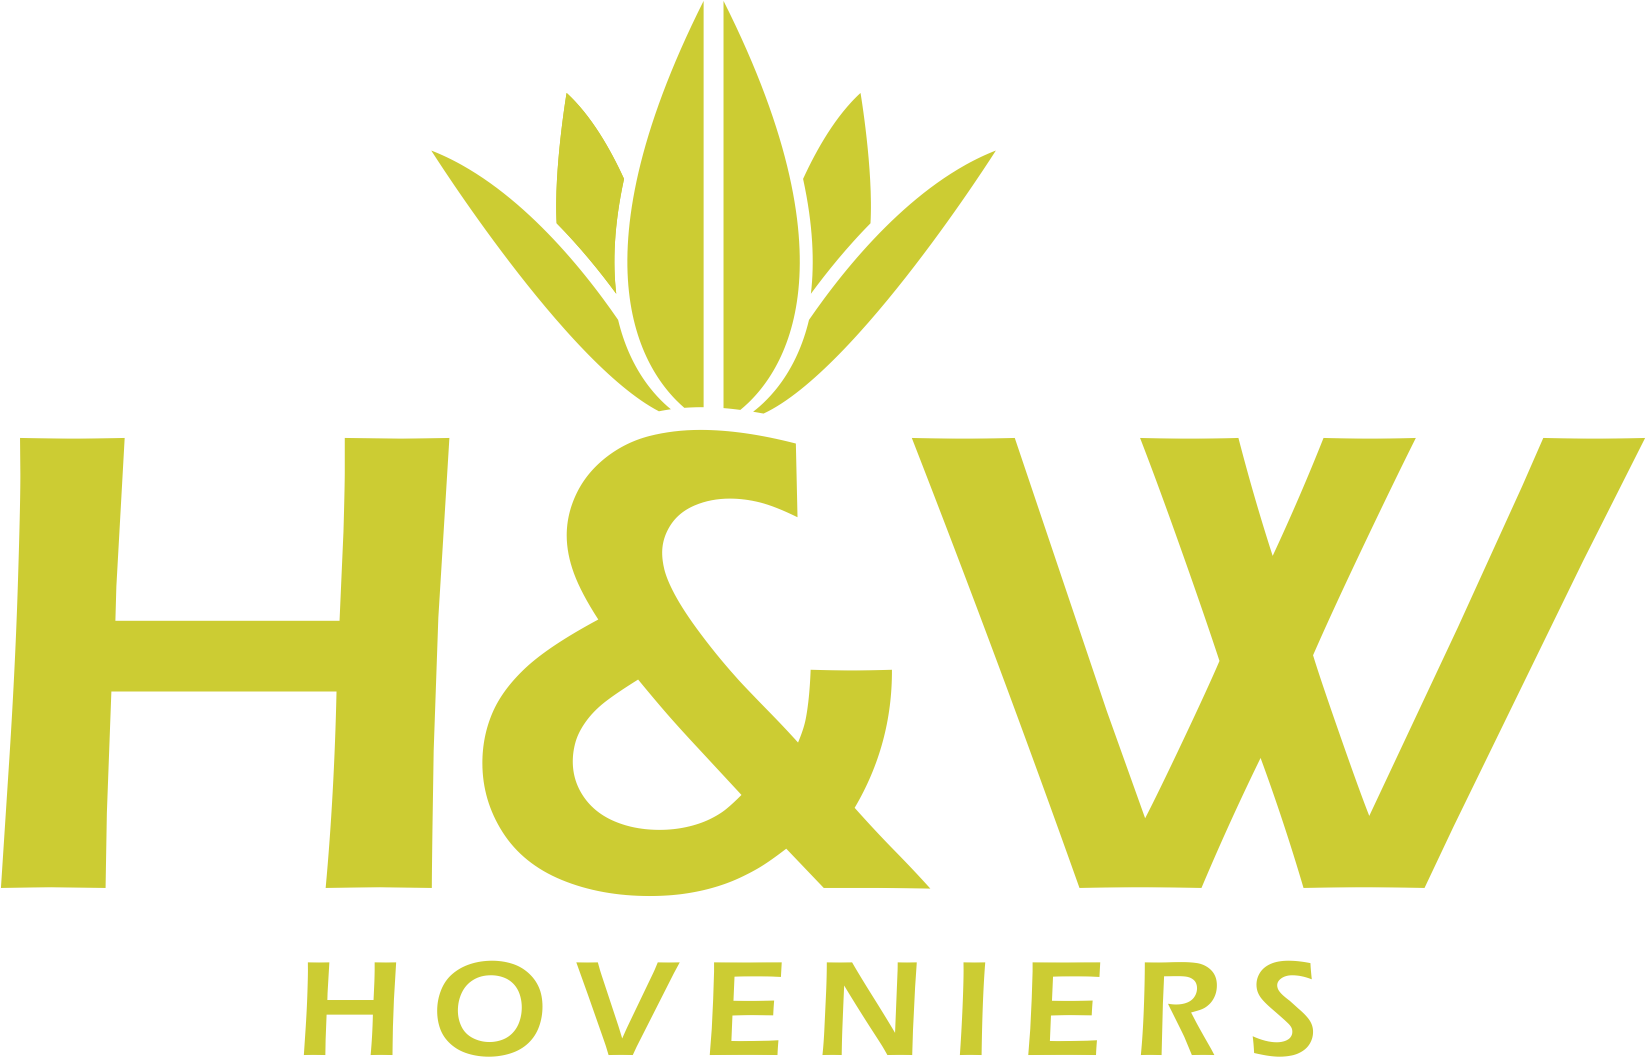 H&W Hoveniers